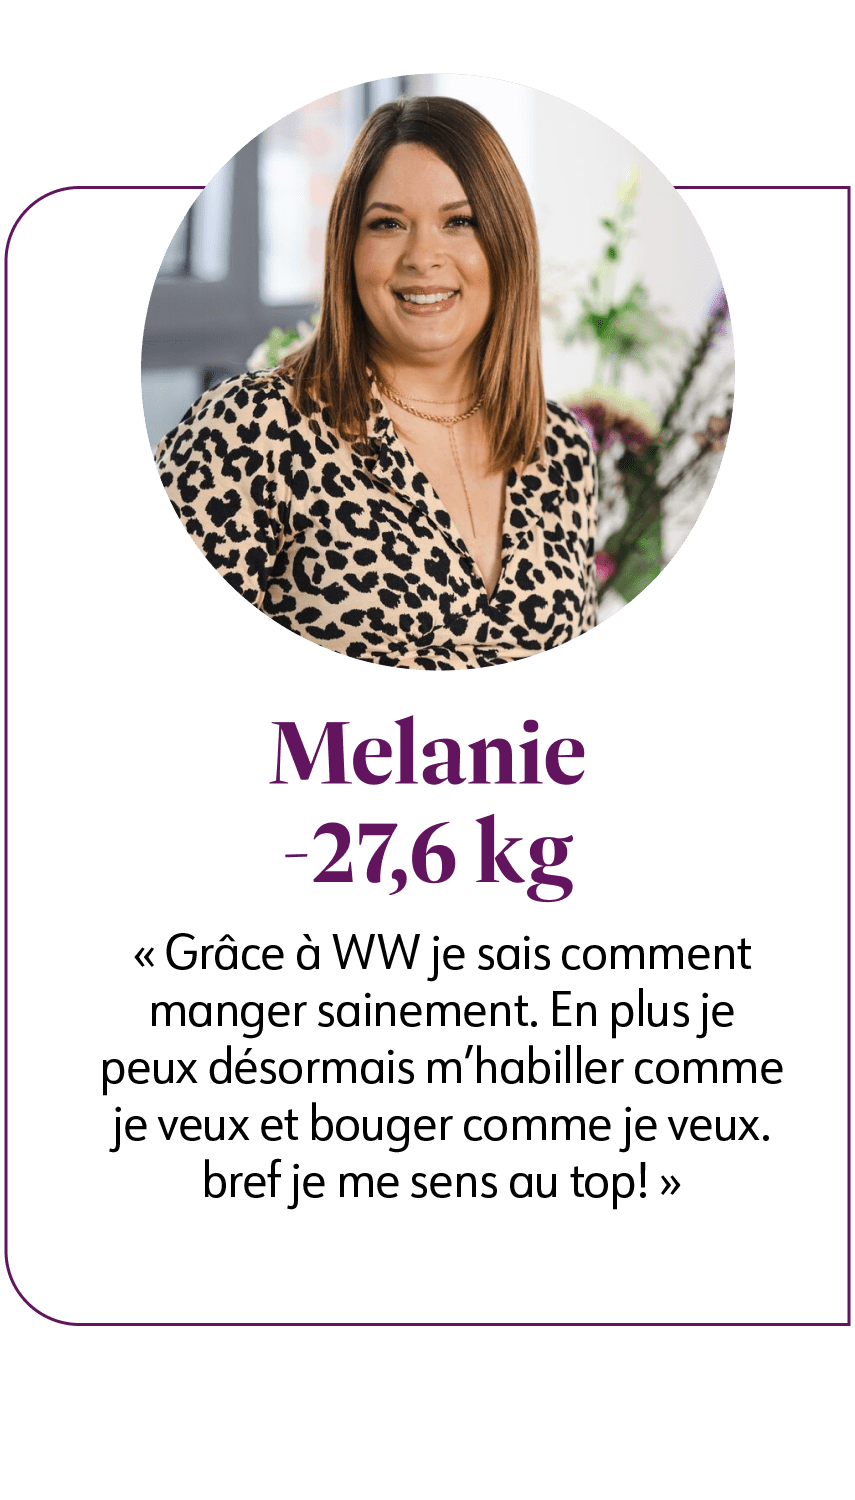 Melanie qui a perdu 27,6 kg. Elle dit "Grâce à WW je sais comment manger sainement. En plus je peux désormais m'habiller comme je veux et bouger comme je veux. Bref je me sens au top !"